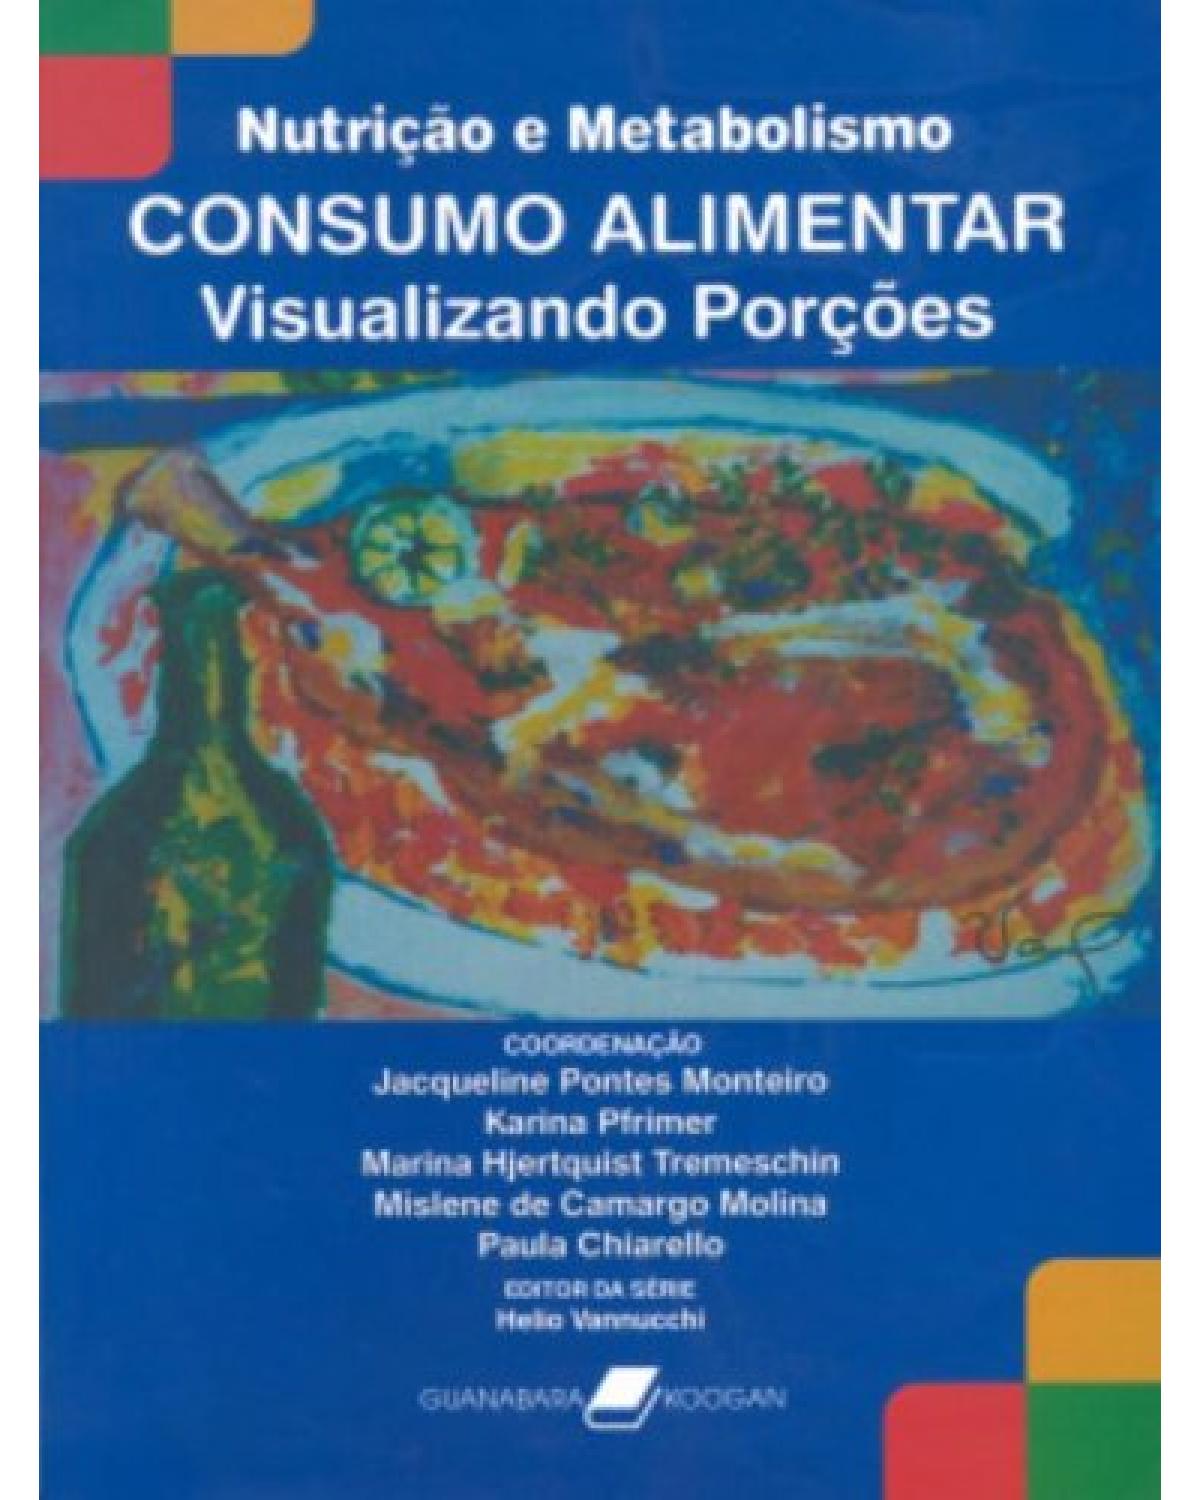 Consumo alimentar - Visualizando porções - 1ª Edição | 2007